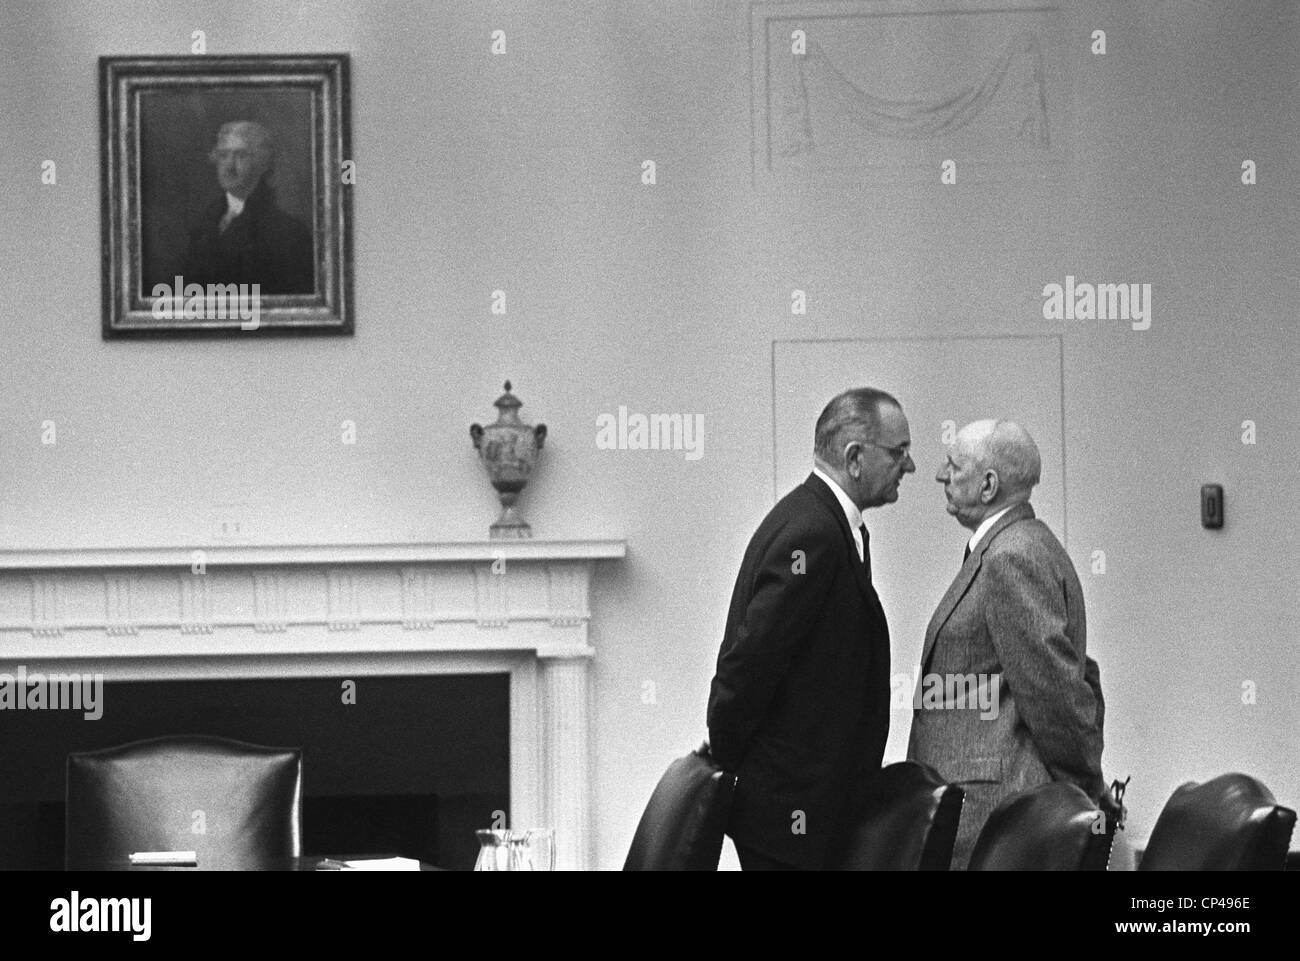 El presidente Johnson invadiendo el espacio del senador Richard Russell durante una conversación en la Sala de Gabinete de la Casa Blanca. Diciembre Foto de stock